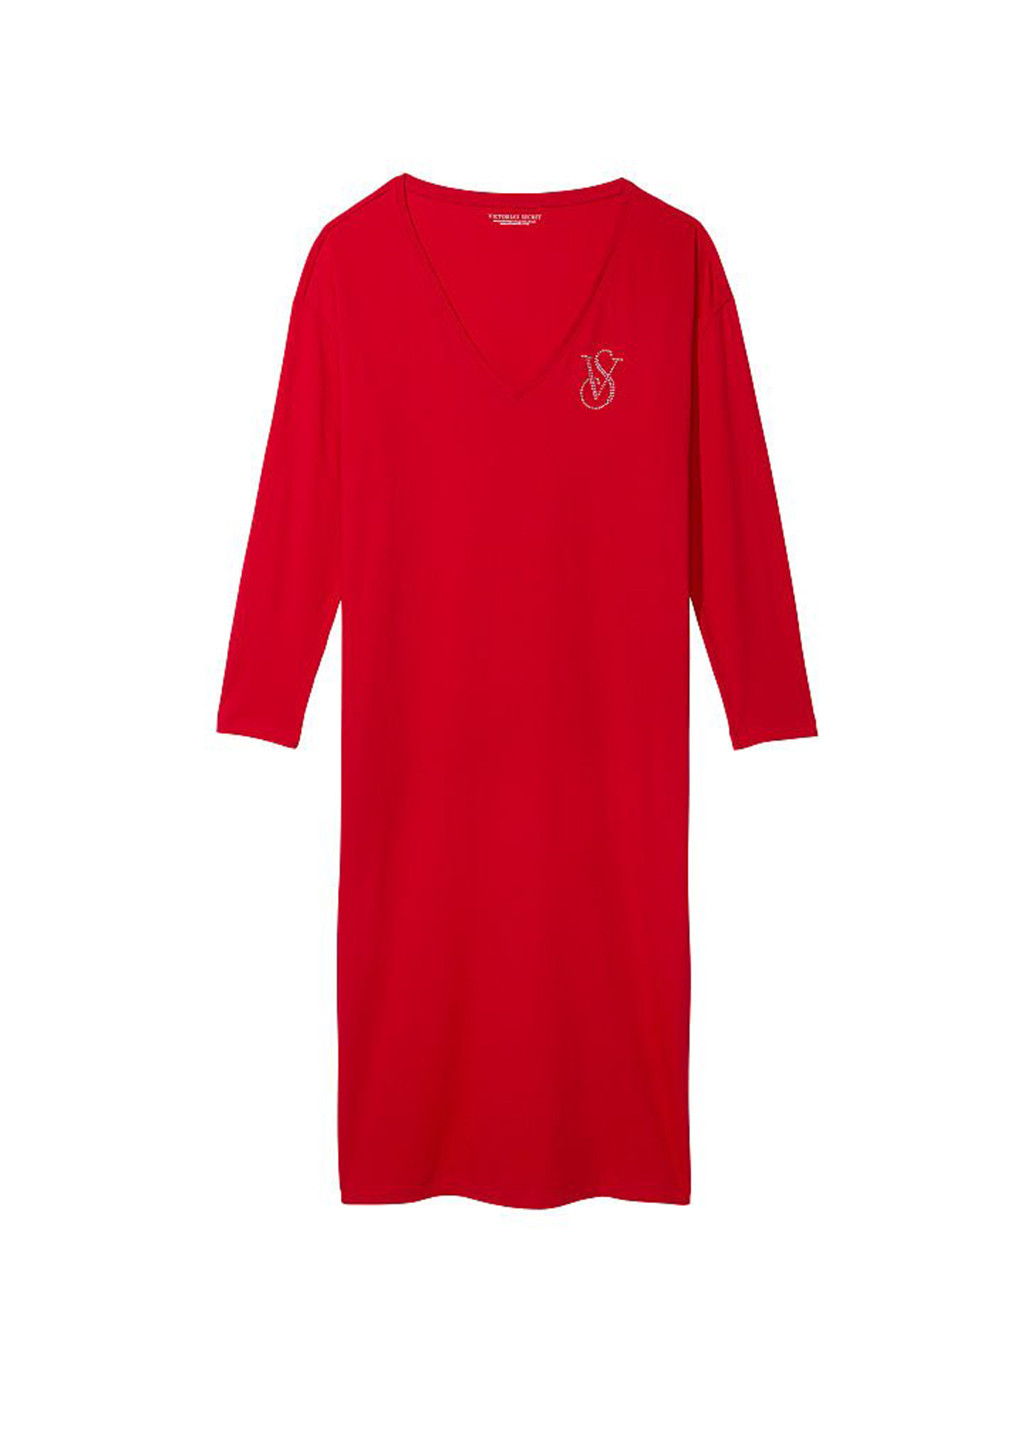 Червона домашній сукня Victoria's Secret з логотипом